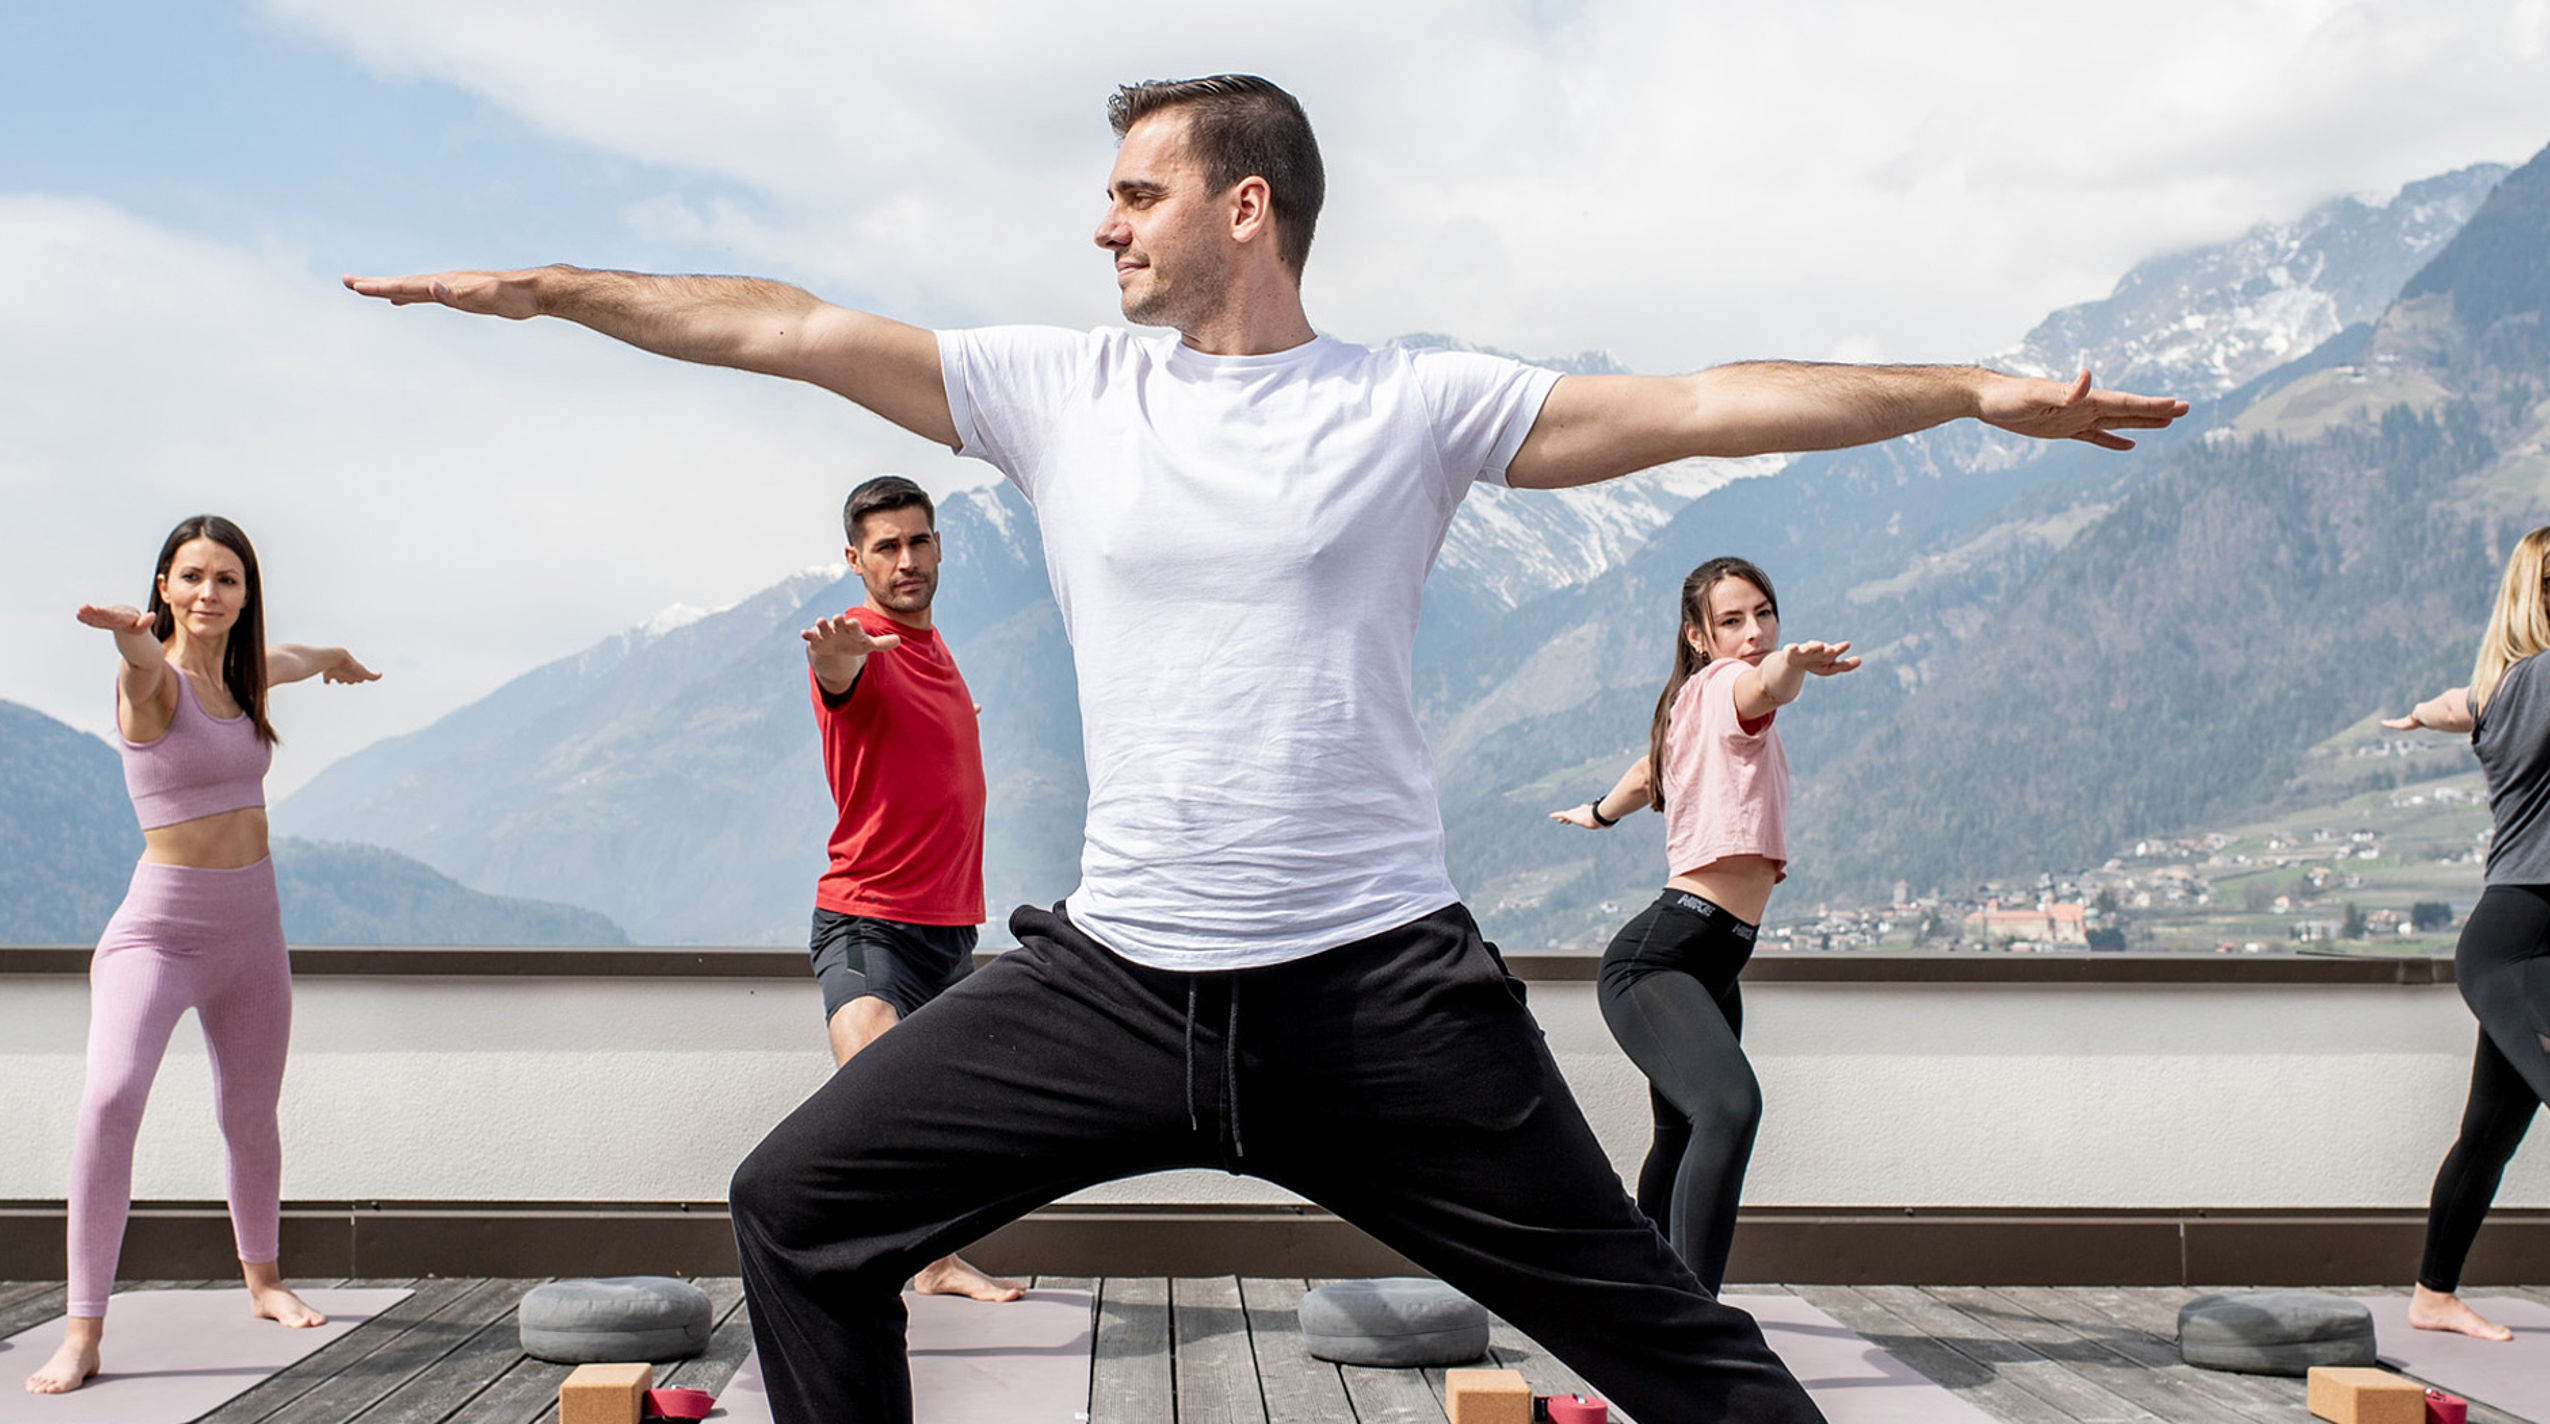 Mann mit weißen T-Shirt zeigt Yoga-Pose, anderen vier machen nach